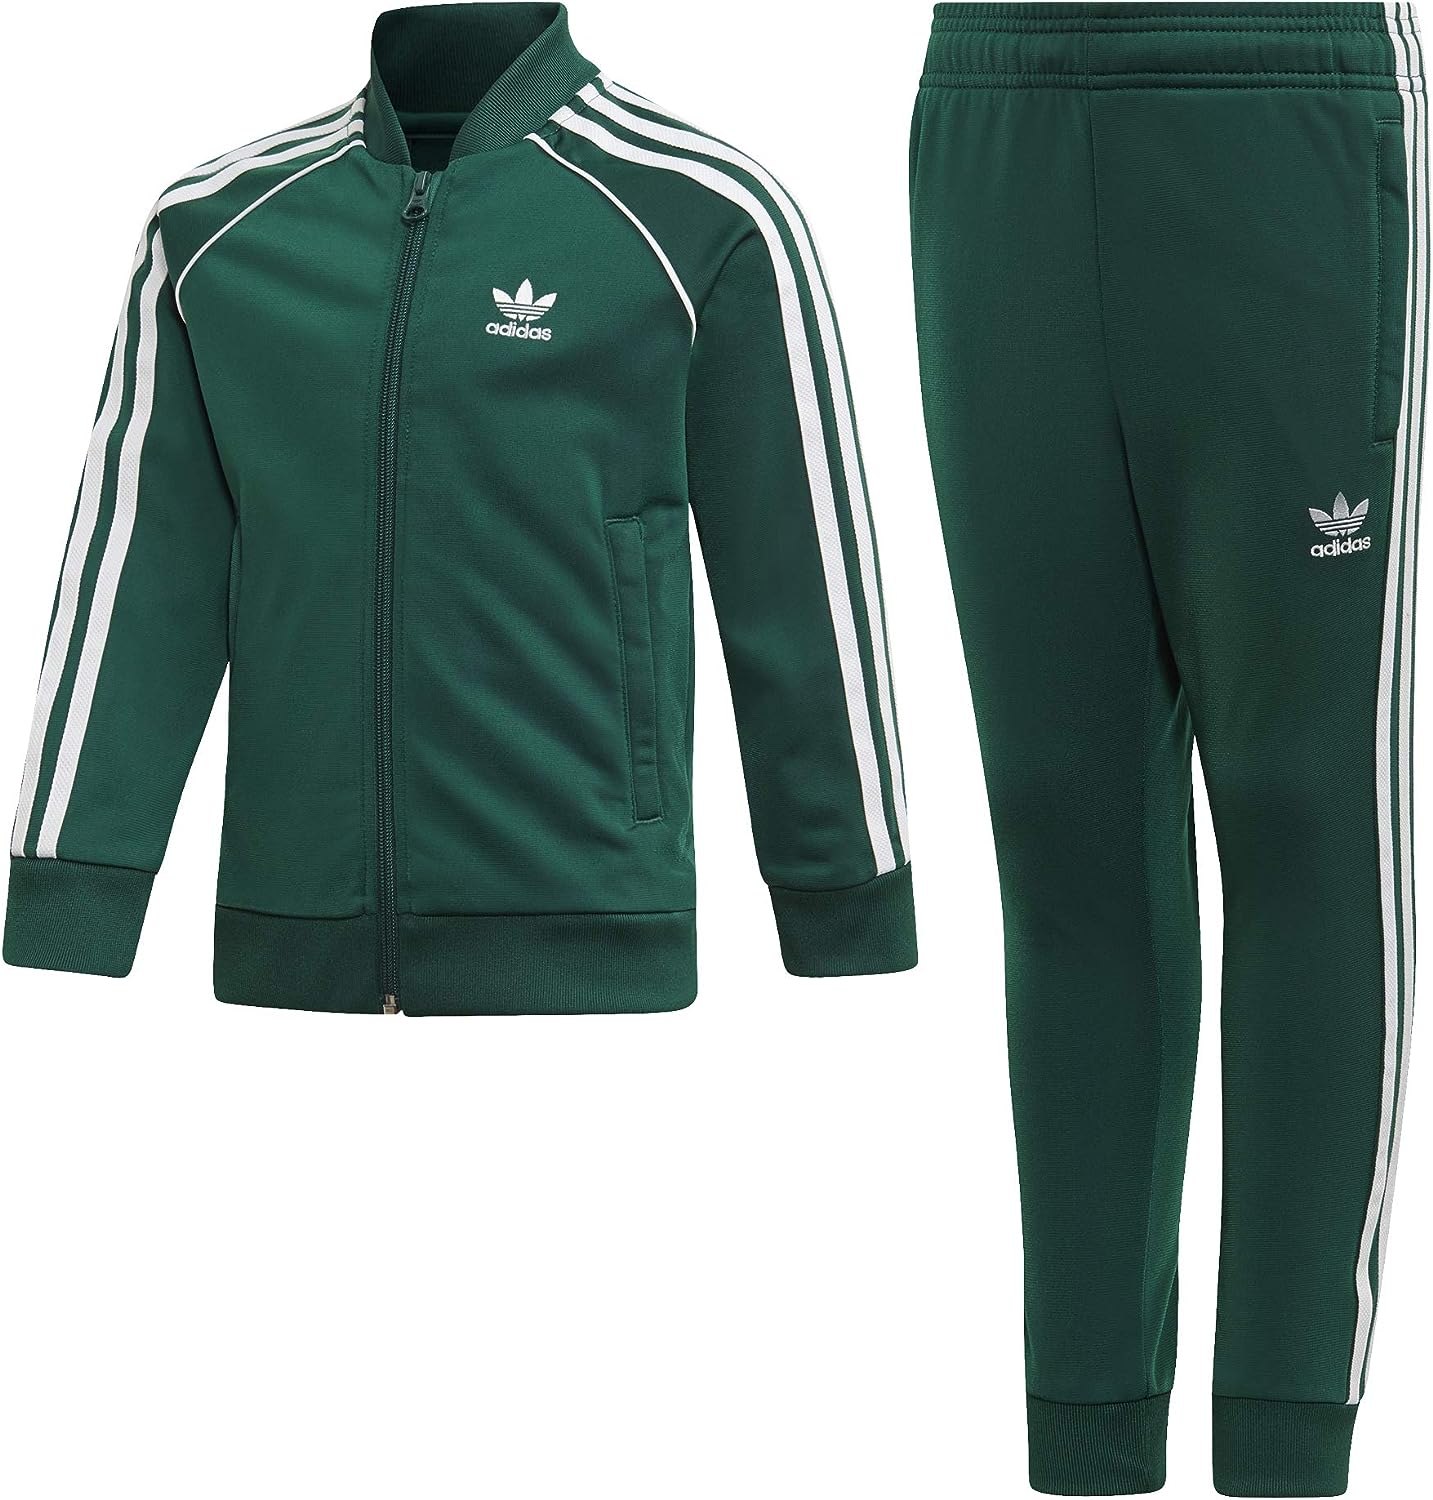 Спортивный костюм адидас цены. Адидас ориджинал спортивный костюм зеленый. Adidas SST зеленый костюм. Спортивный костюм адидас ориджинал мужской зеленый. Adidas Originals костюм мужской зеленый.